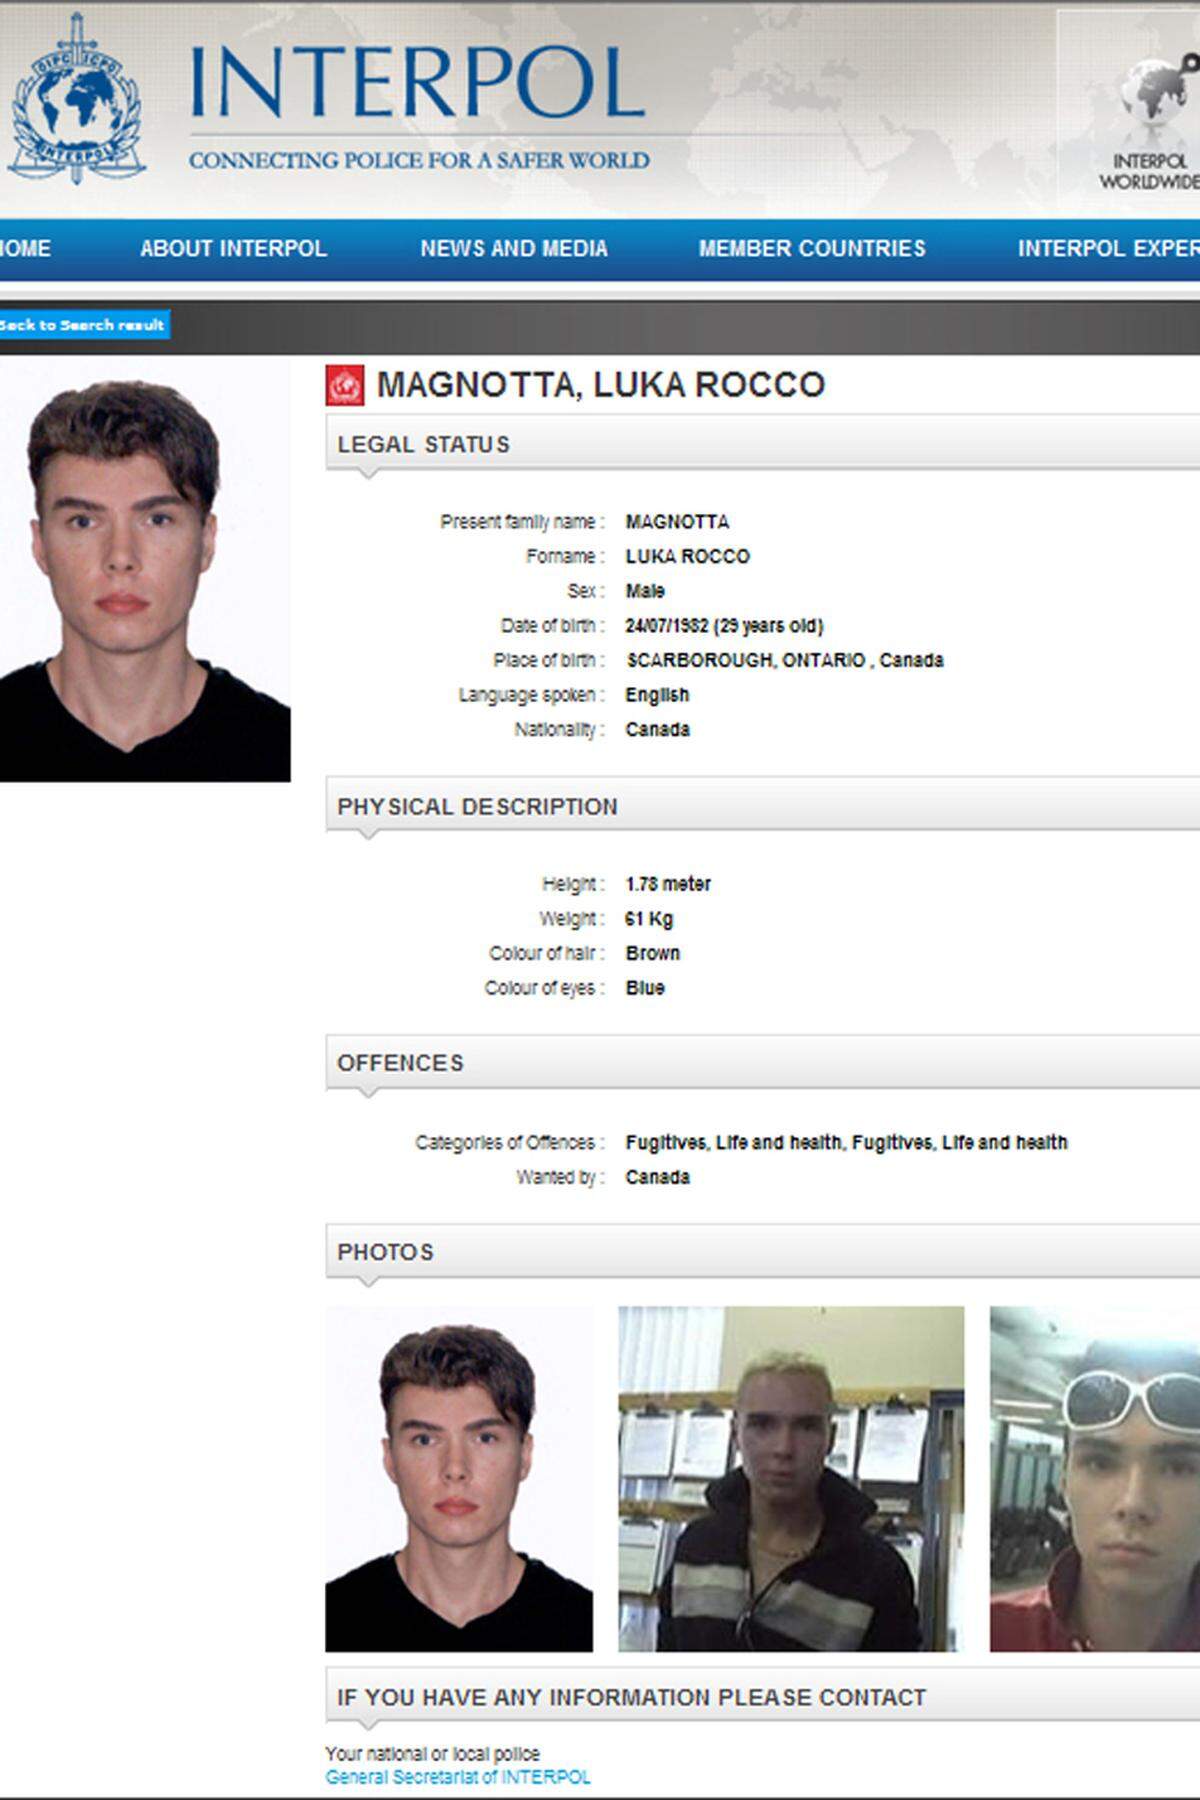 Seine Fahndungsfotos gingen um die ganze Welt: Luka Rocco Magnotta soll einen 33 Jahre alten Studenten getötet und zerstückelt haben. Ihm wird vorgeworfen, Teile der Leiche an kanadische politische Parteien geschickt zu haben. Der Mord soll am 24. oder 25. Mai passiert sein. Der Verwandlungskünstler lieferte sich mit der Polizei eine Verfolgungsjagd bis nach Berlin, wo er am 4. Juni festgenommen wurde.